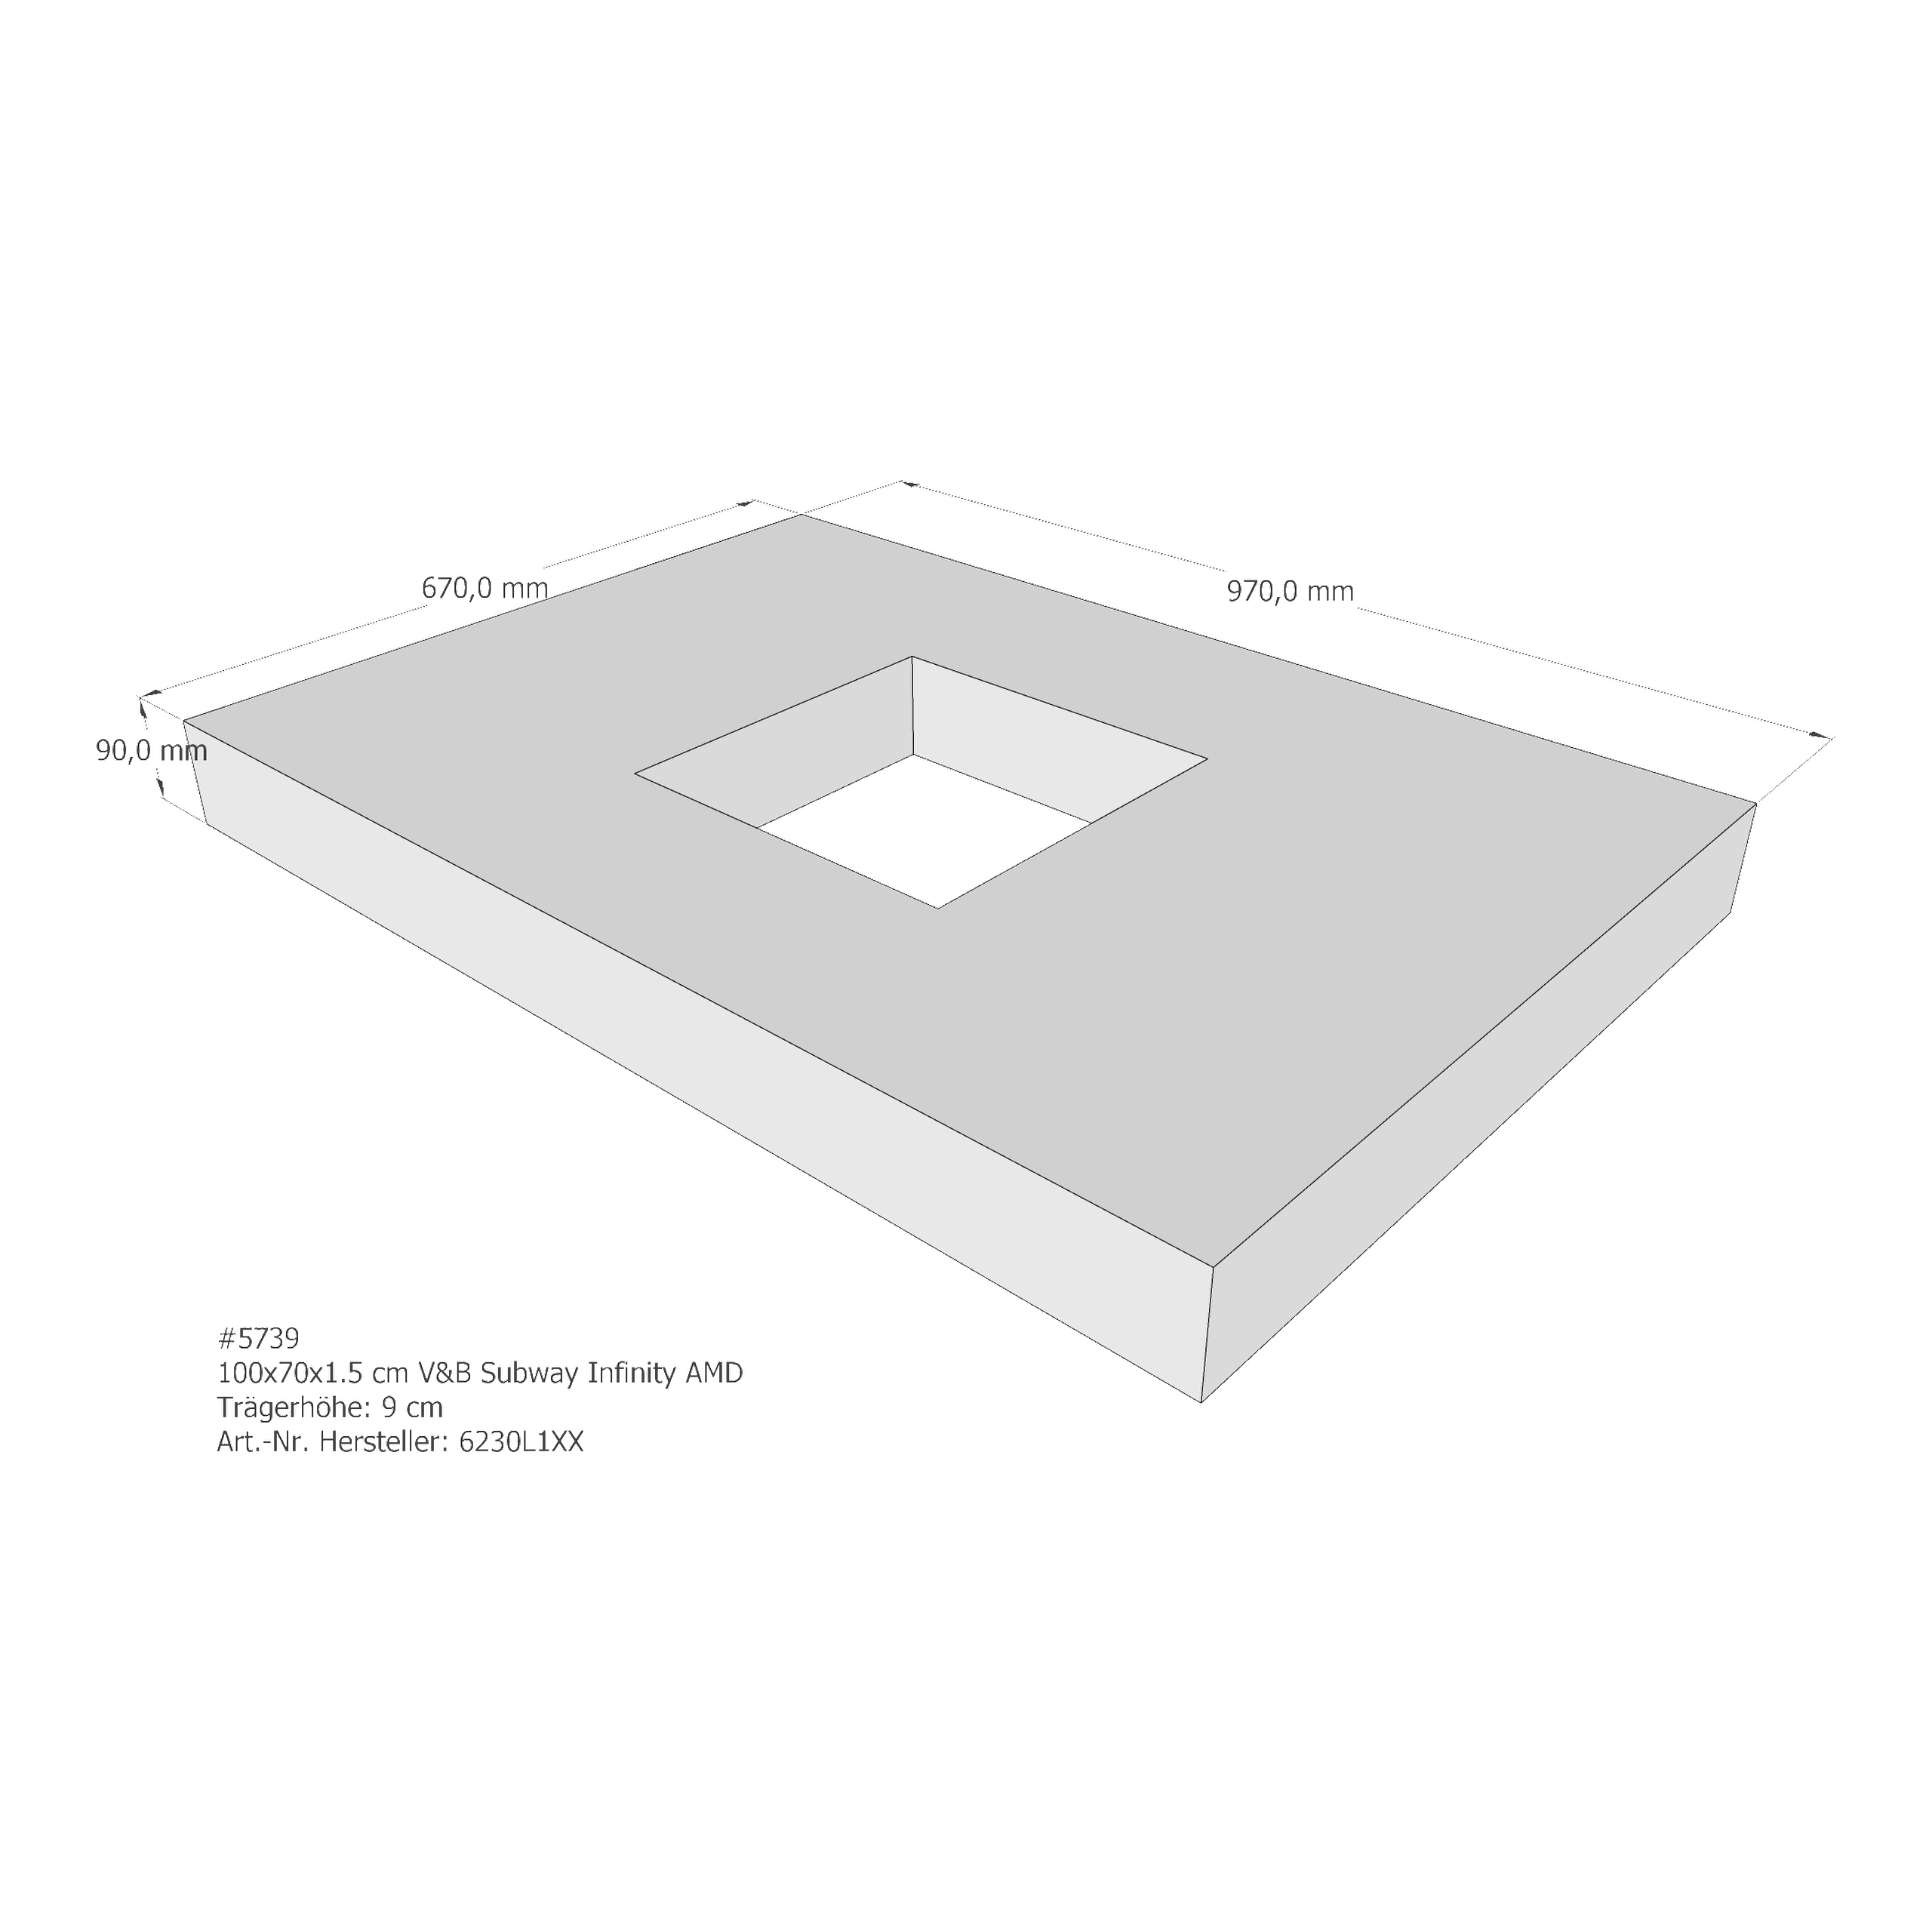 Duschwannenträger für Villeroy & Boch Subway Infinity 100 × 70 × 1,5 cm